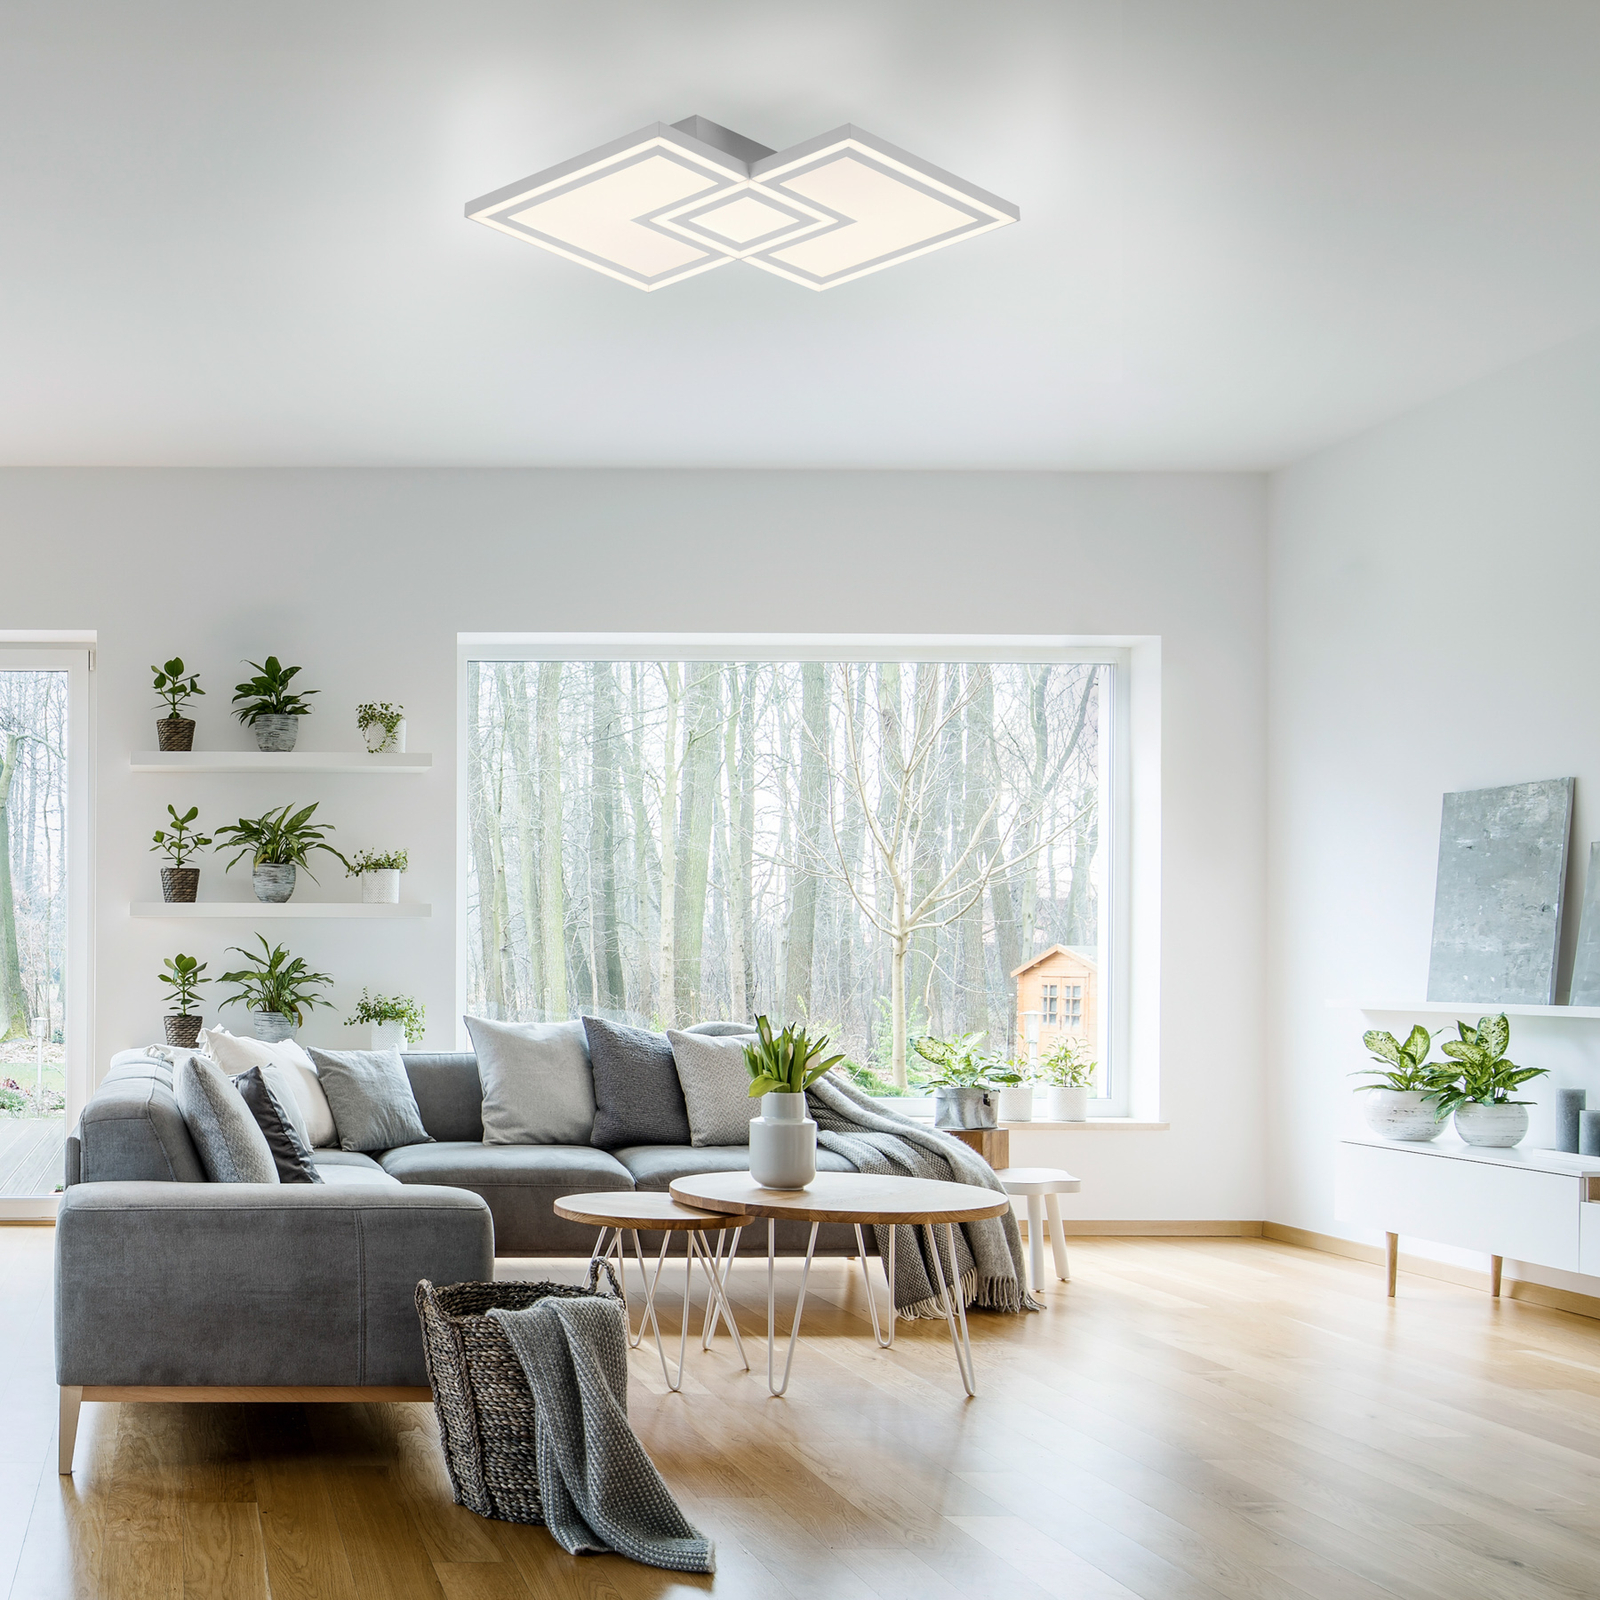 Bedding LED ceiling light, modular light source